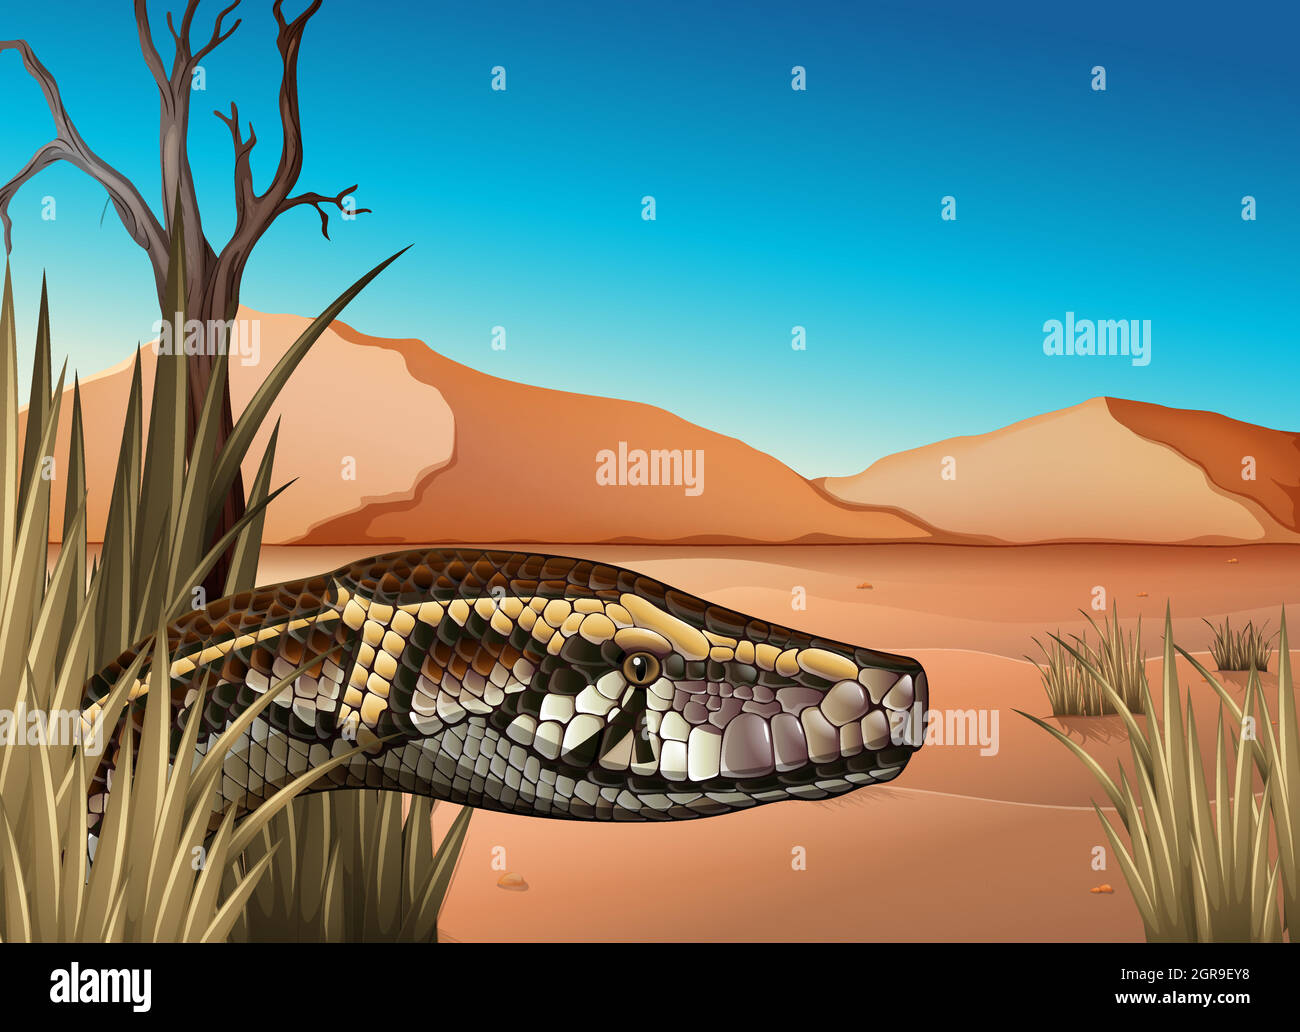 Eine Wüste mit einem Reptil Stock Vektor